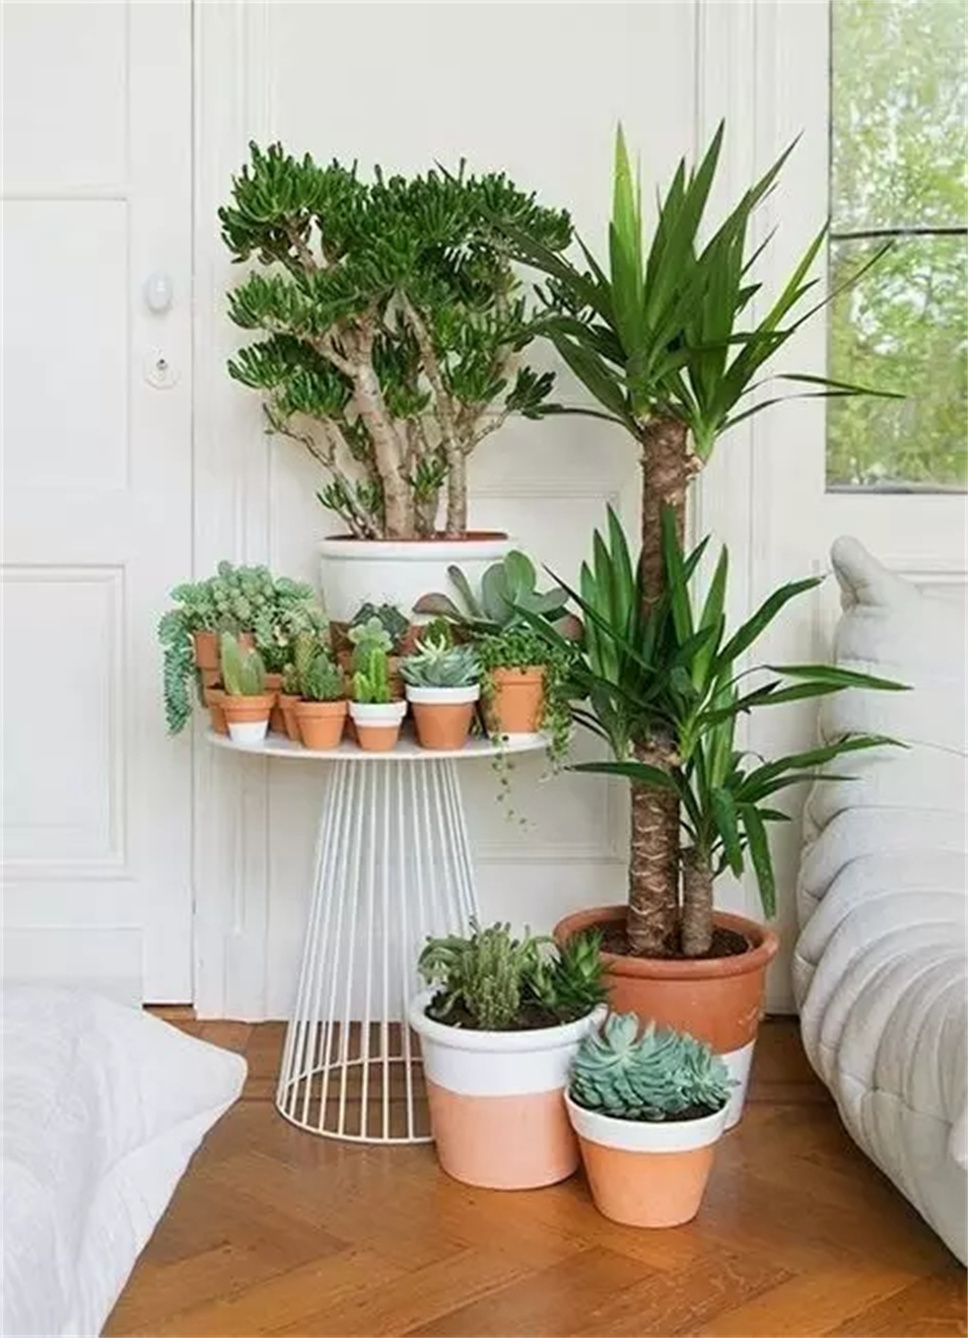 把植物种在这样的花盆里，你有考虑过植物的感受吗？